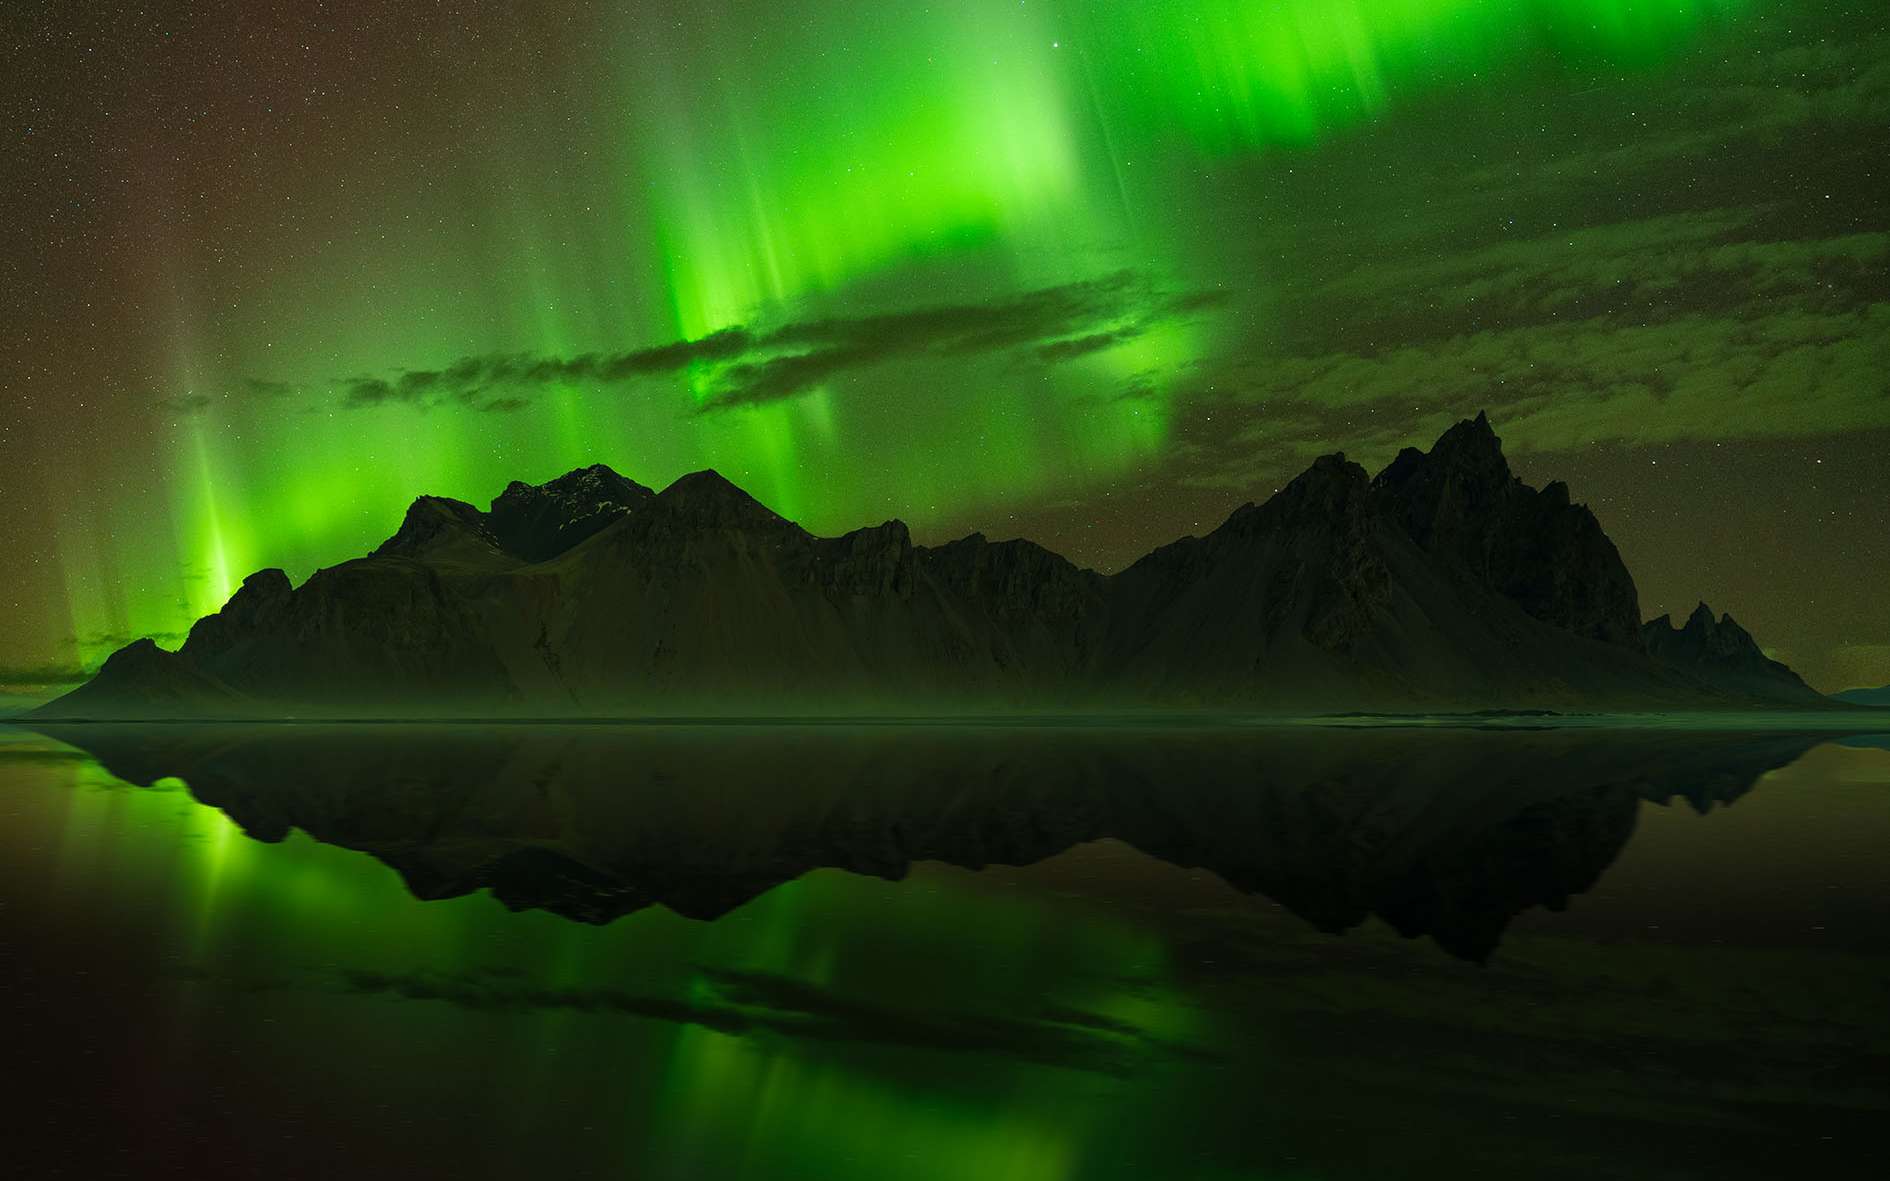 Capturez de fascinantes aurores boréales avec nos conseils photographiques. © Delil Geyik, tous droits réservés